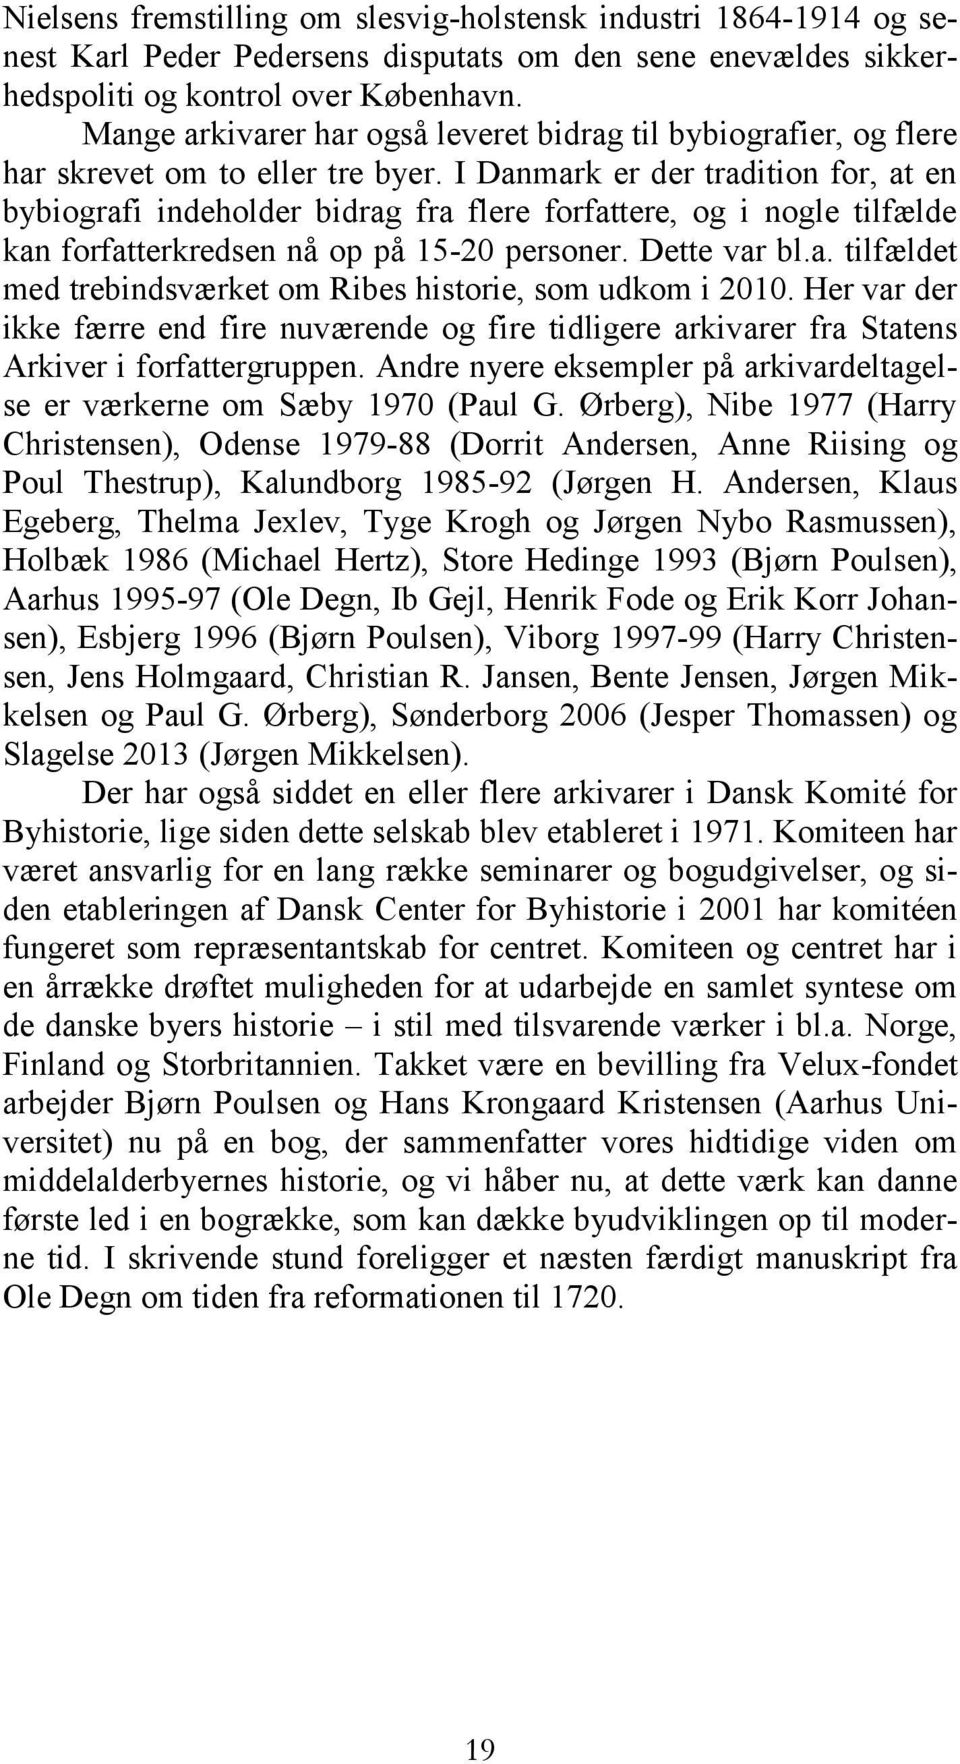 I Danmark er der tradition for, at en bybiografi indeholder bidrag fra flere forfattere, og i nogle tilfælde kan forfatterkredsen nå op på 15-20 personer. Dette var bl.a. tilfældet med trebindsværket om Ribes historie, som udkom i 2010.